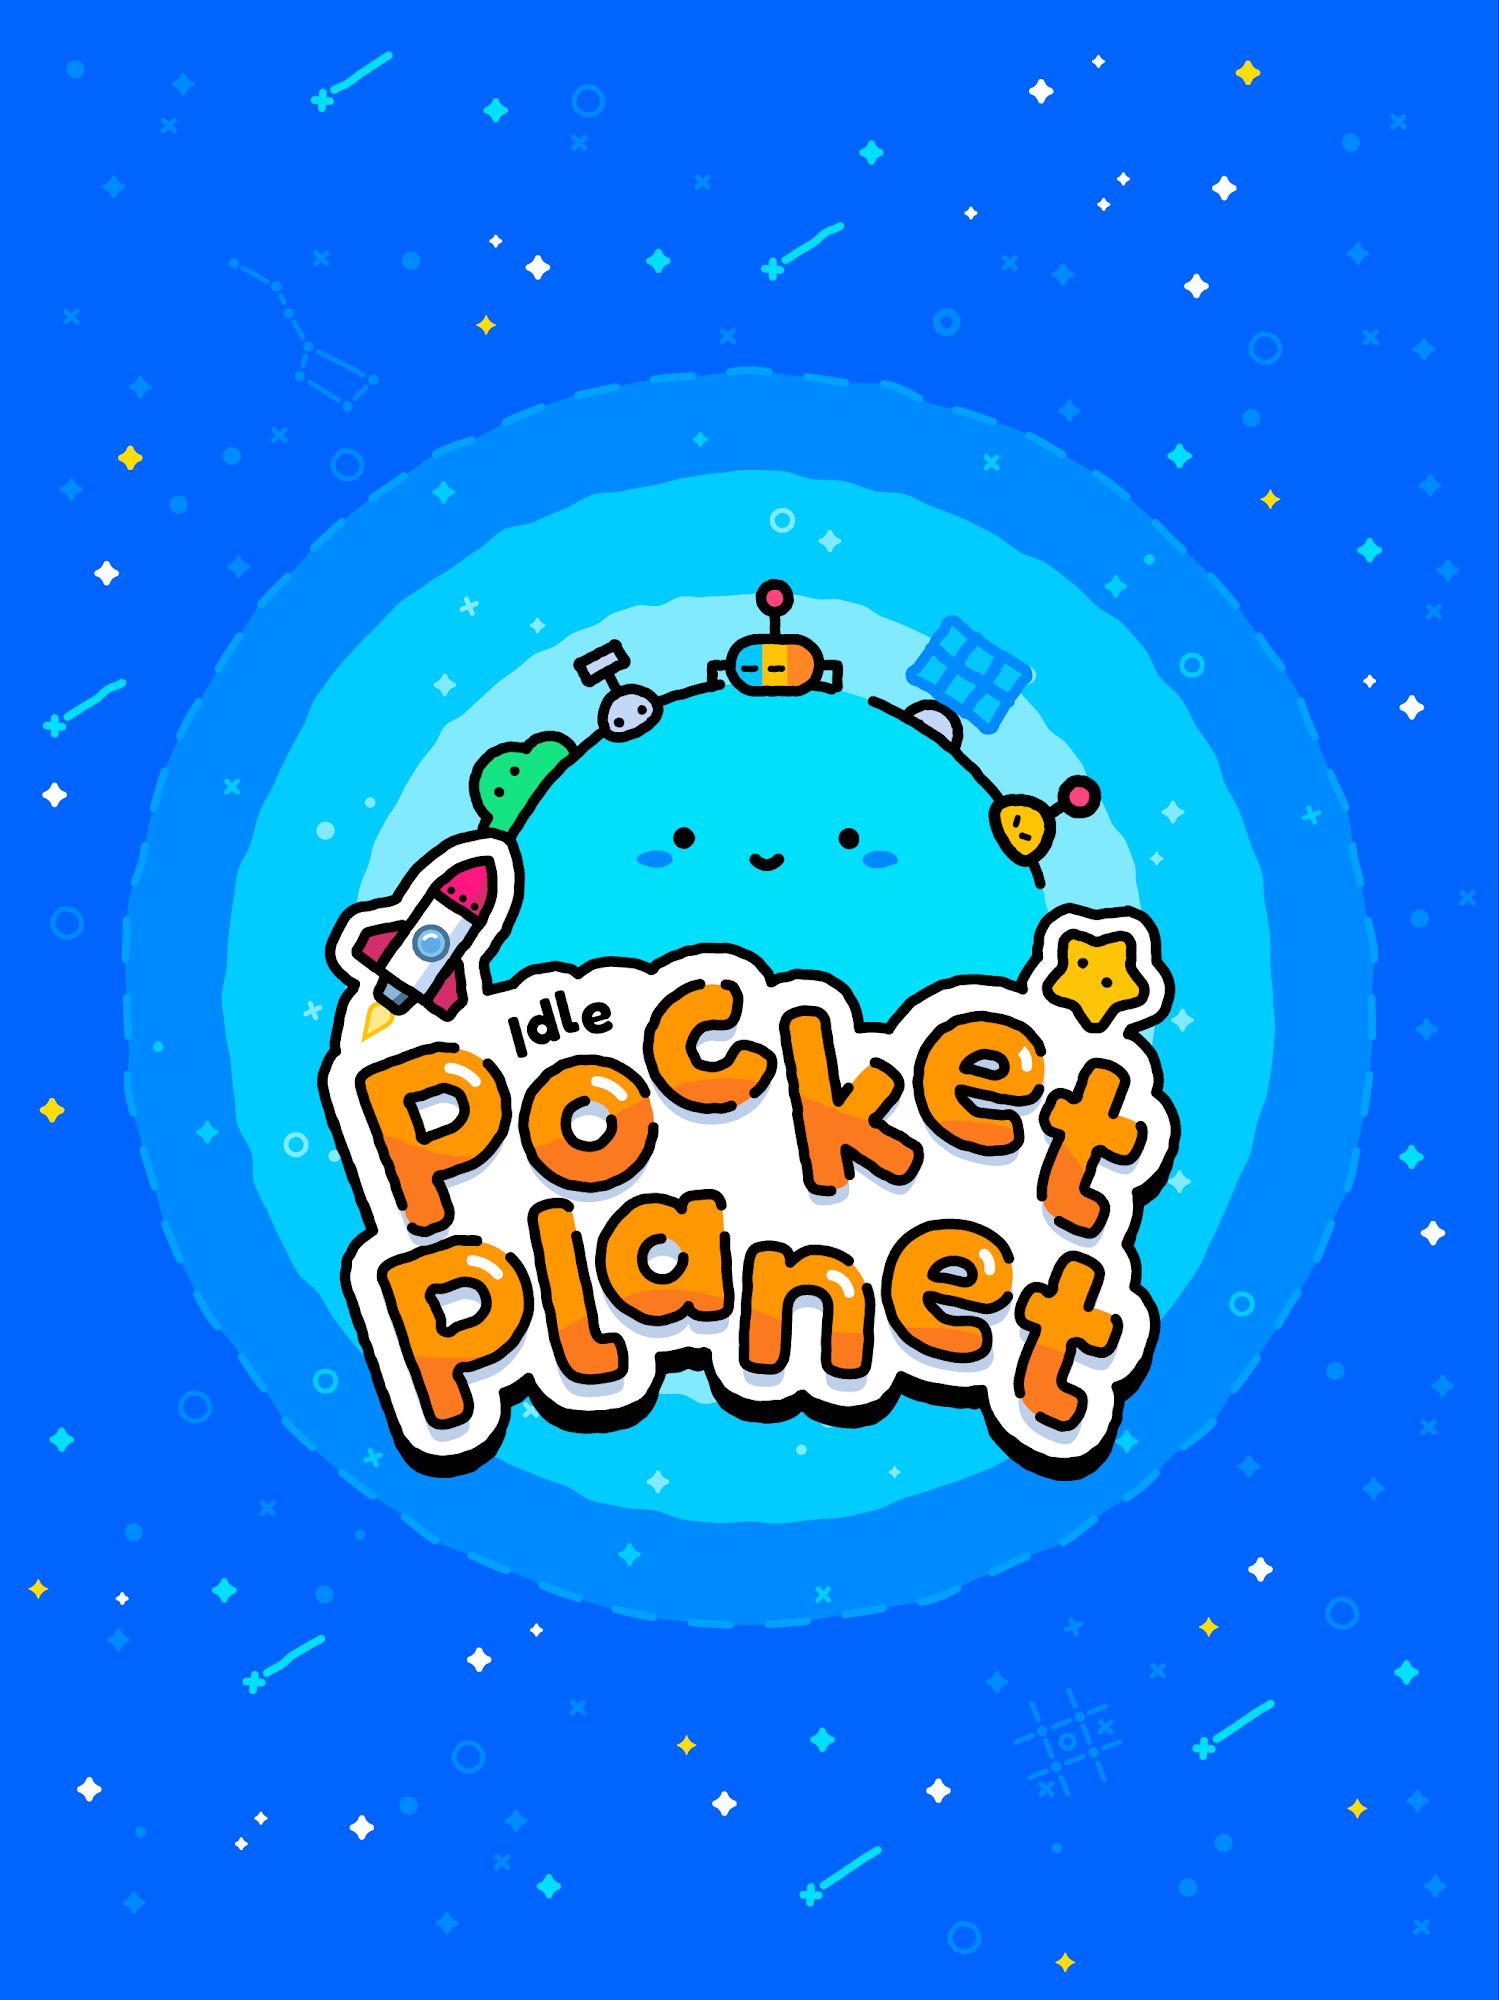 Download Idle Pocket Planet für Android kostenlos.